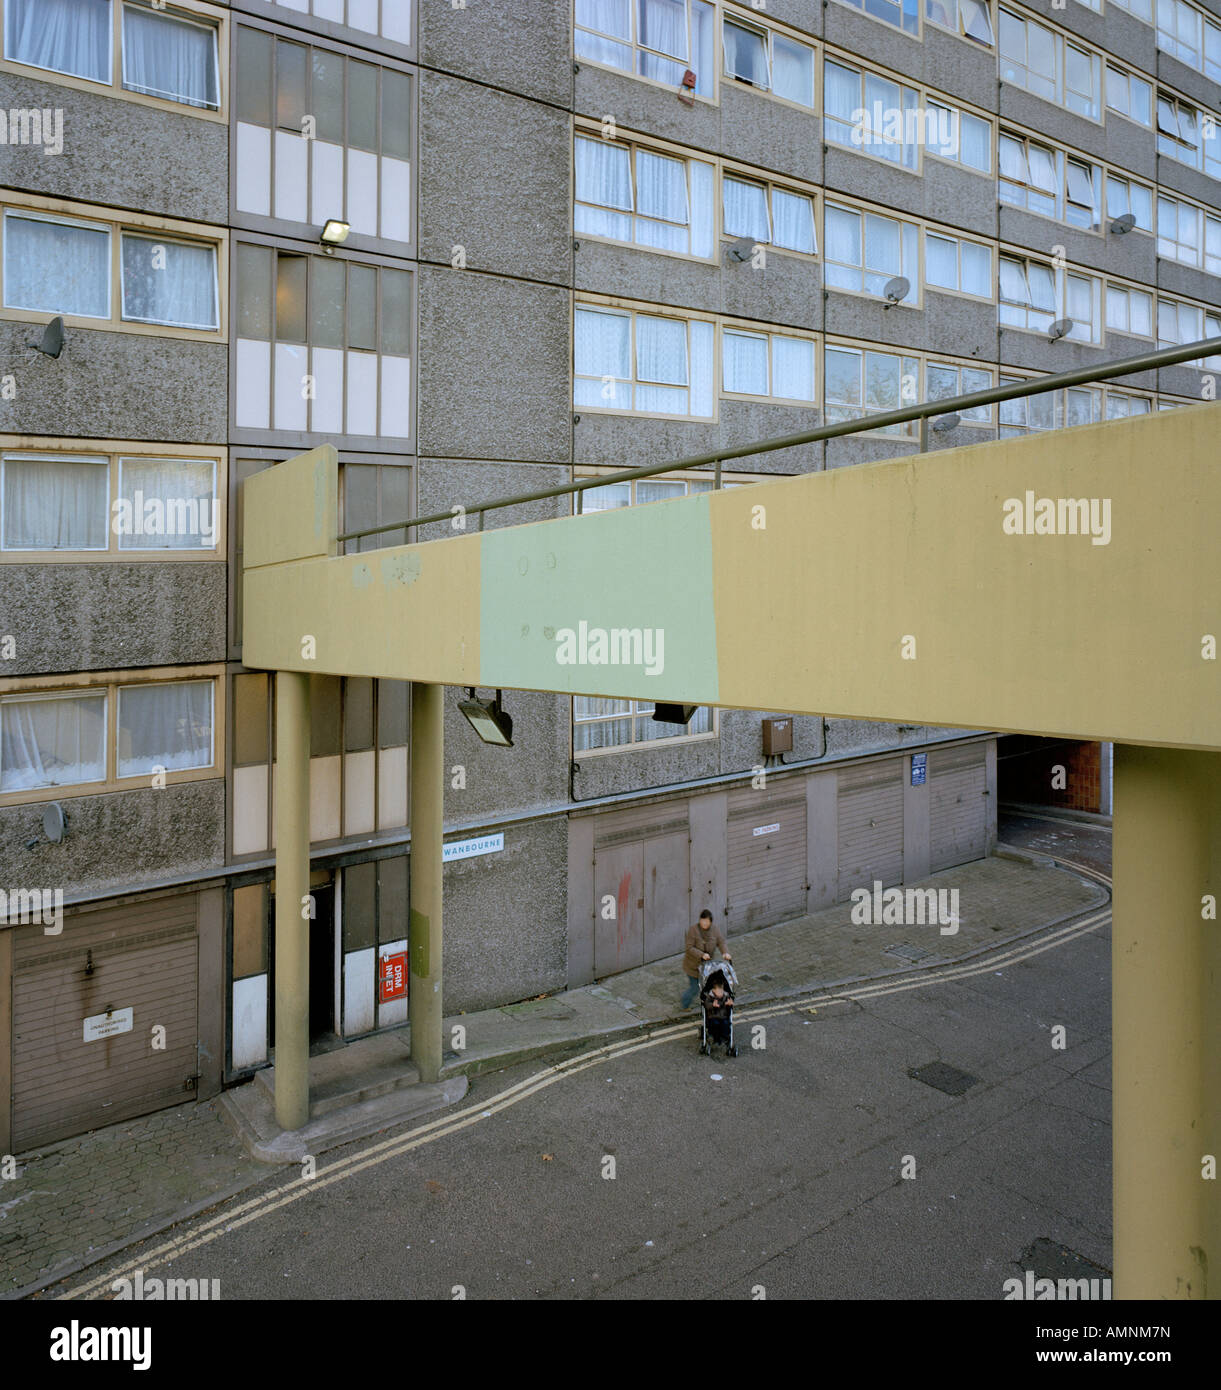 La passerella che conduce ad un alloggio sociale a torre Newington SE17 Londra Inghilterra REGNO UNITO Foto Stock